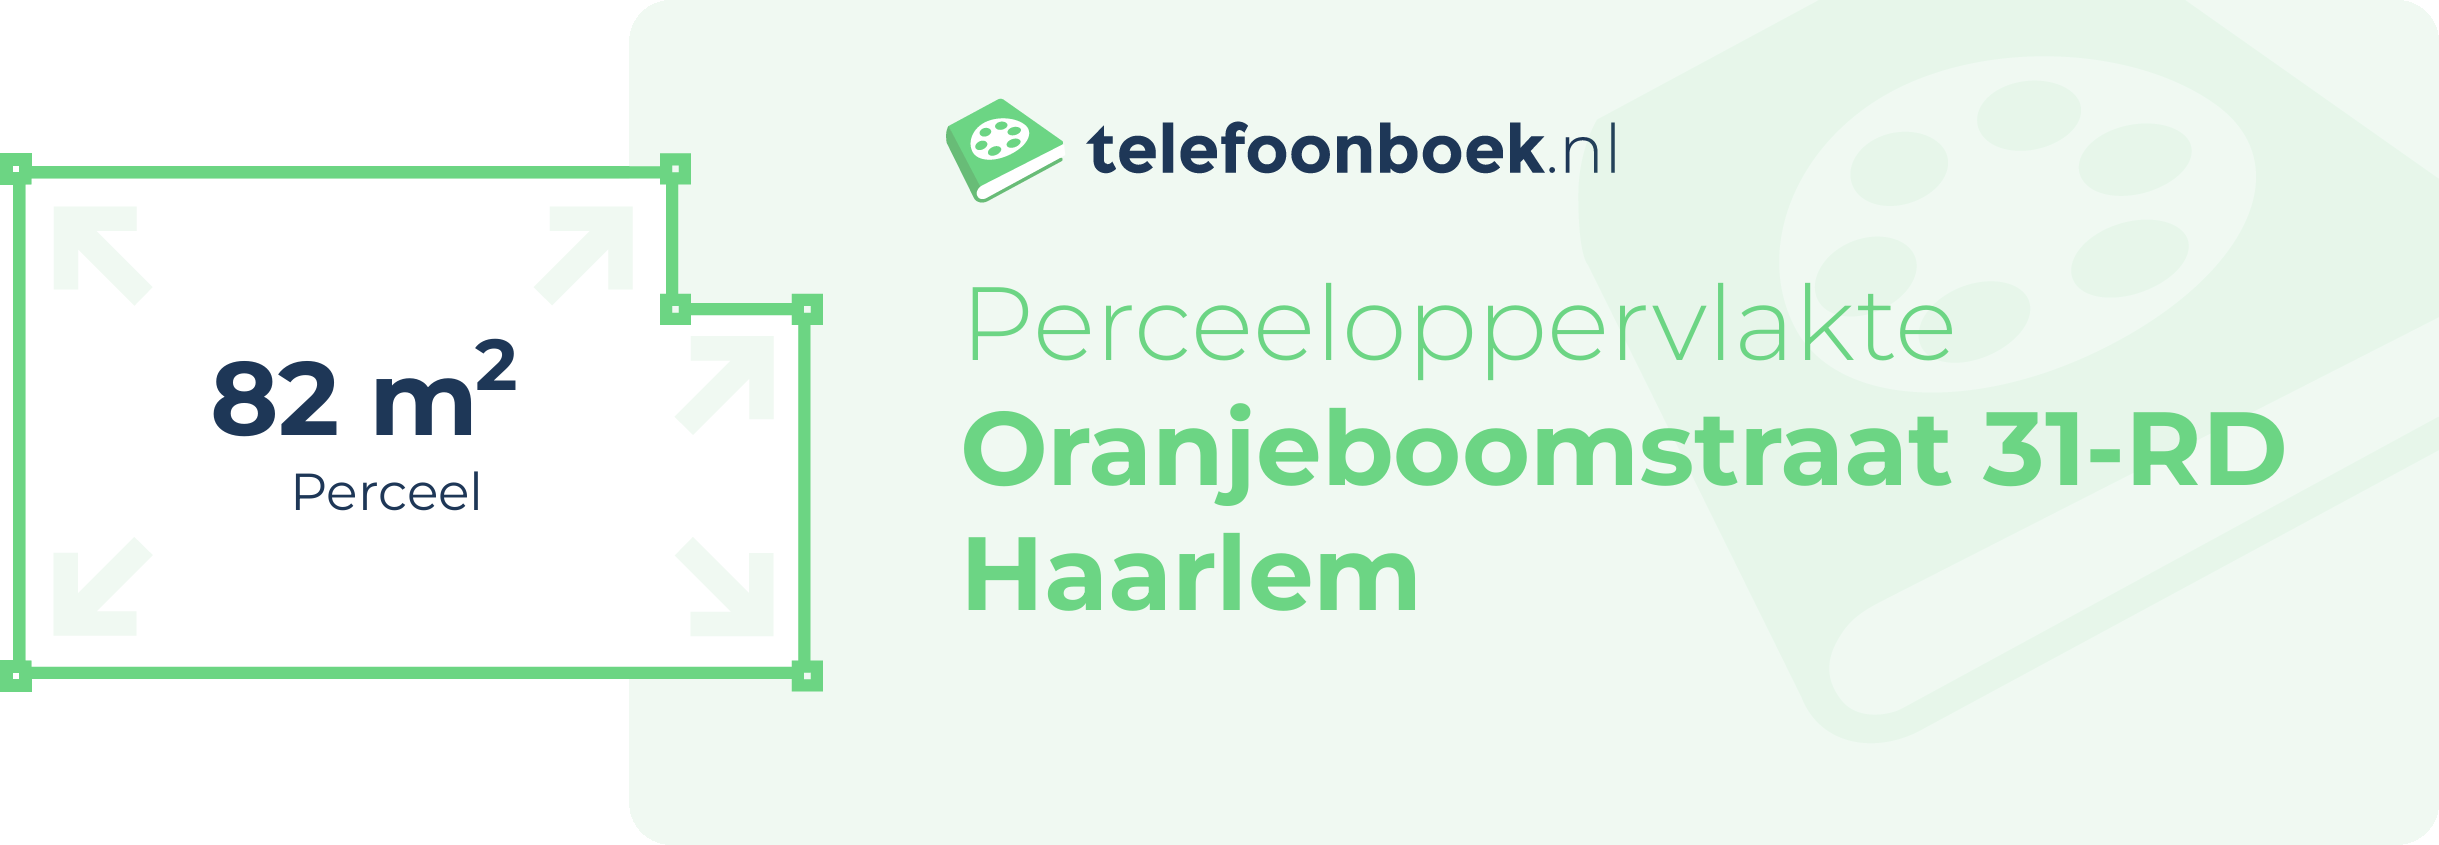 Perceeloppervlakte Oranjeboomstraat 31-RD Haarlem